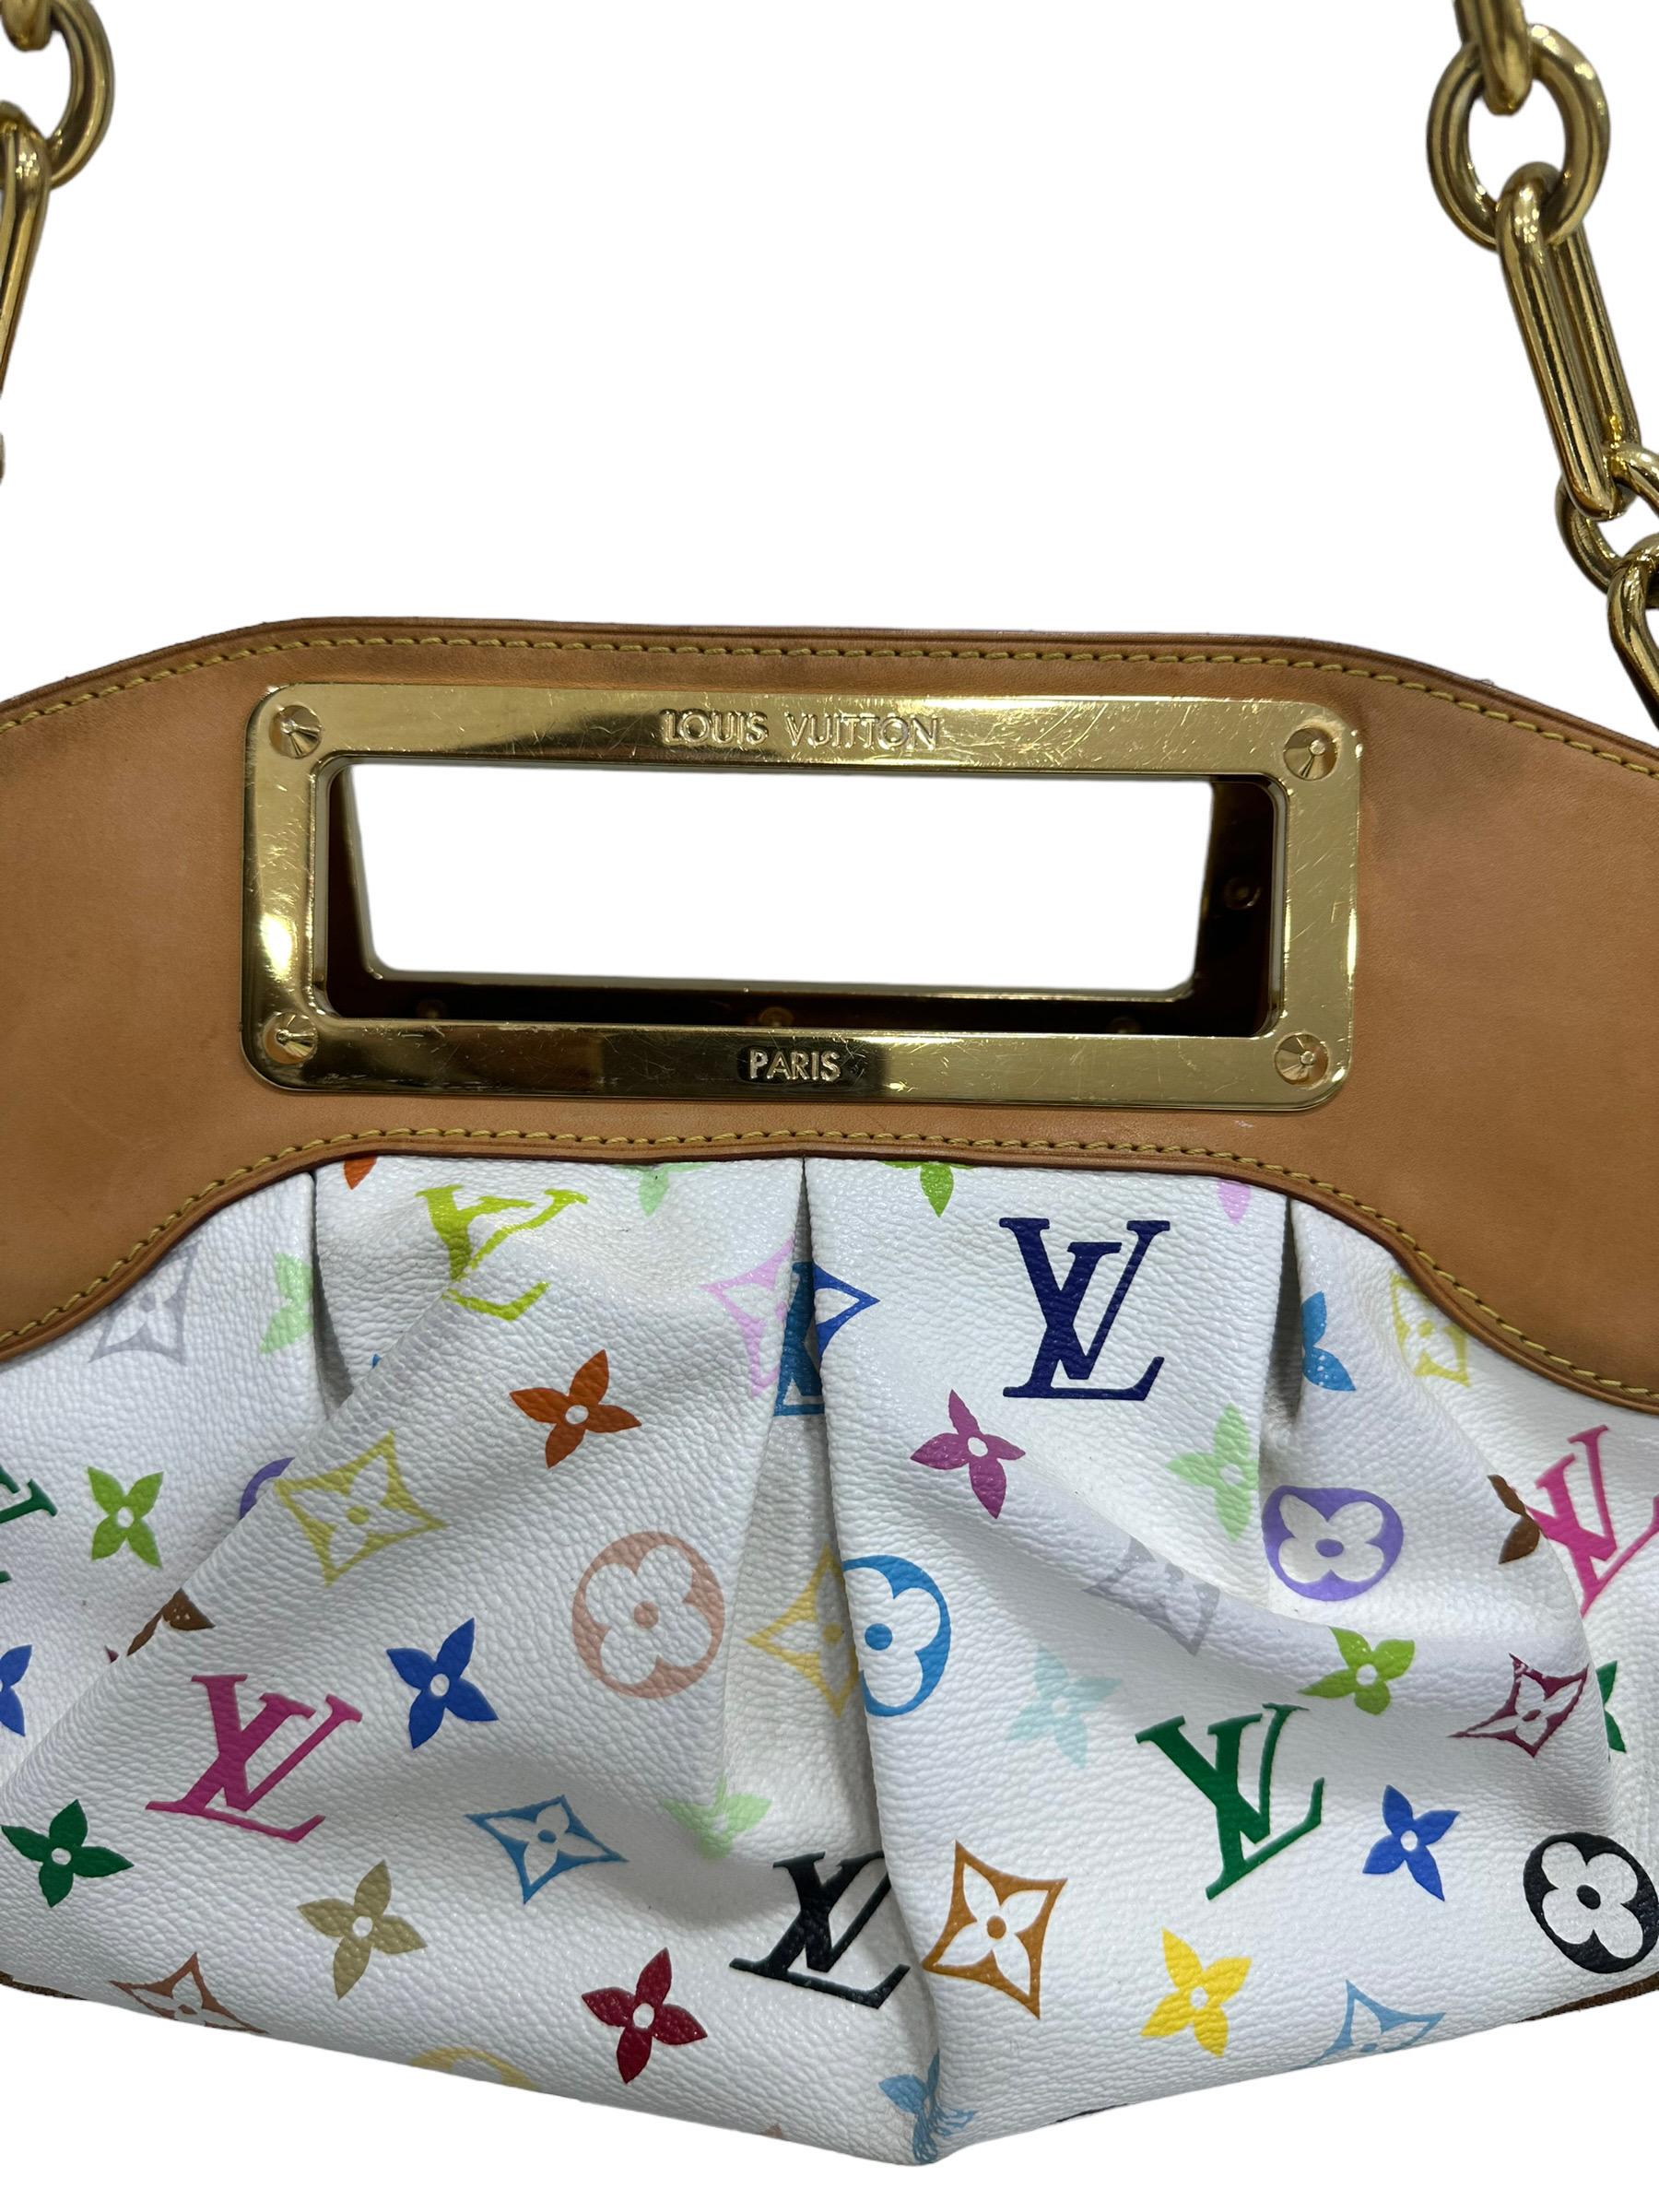 Louis Vuitton Tasche, Modell Judy, Größe PM, limitierte Auflage in Zusammenarbeit mit Takashi Murakami. Aus mehrfarbigem Canvas mit weißem Hintergrund, mit Einsätzen aus Rindsleder und goldenem Hartgewebe. Ausgestattet mit einem zentralen Verschluss